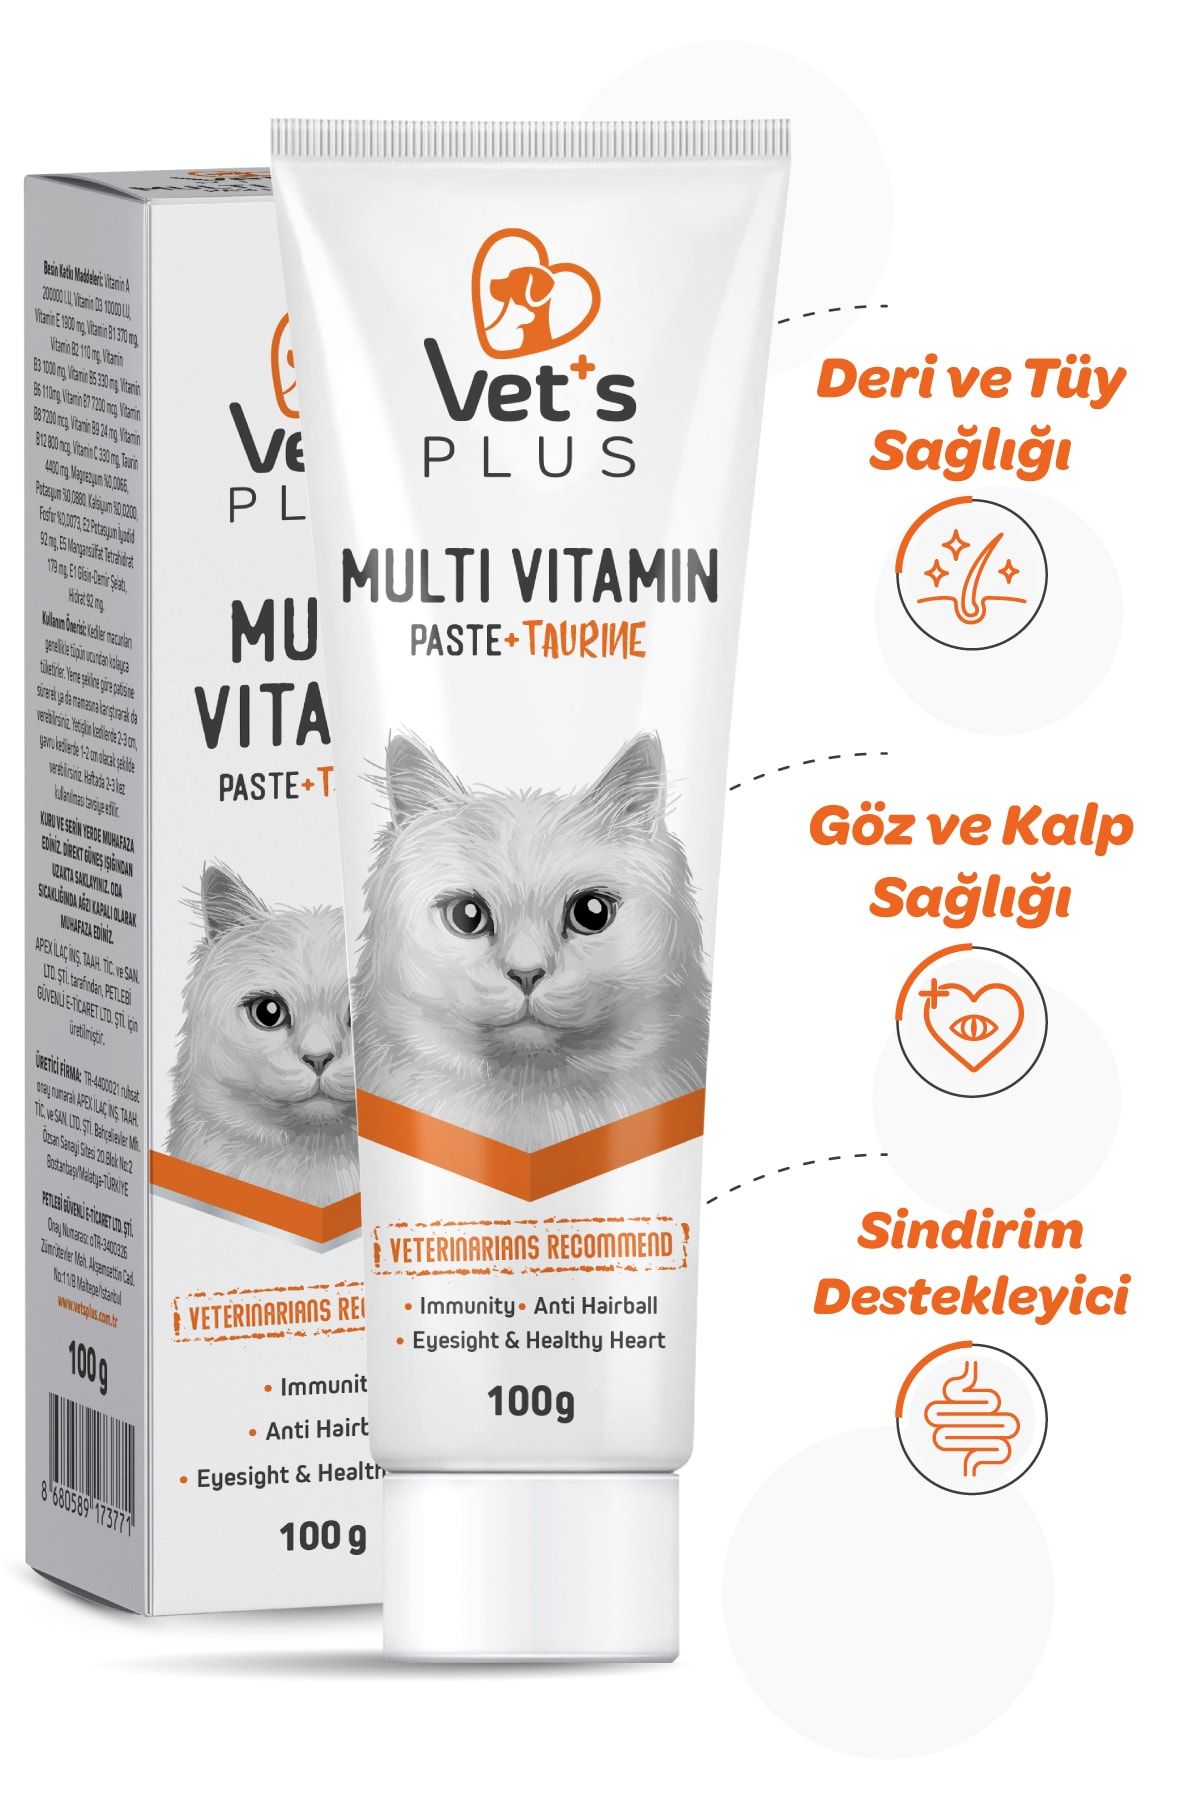 Vet's Plus Taurinli Multivitamin Kedi Macunu 100gr Yetişkin Kediler Için Multivitamin Desteği